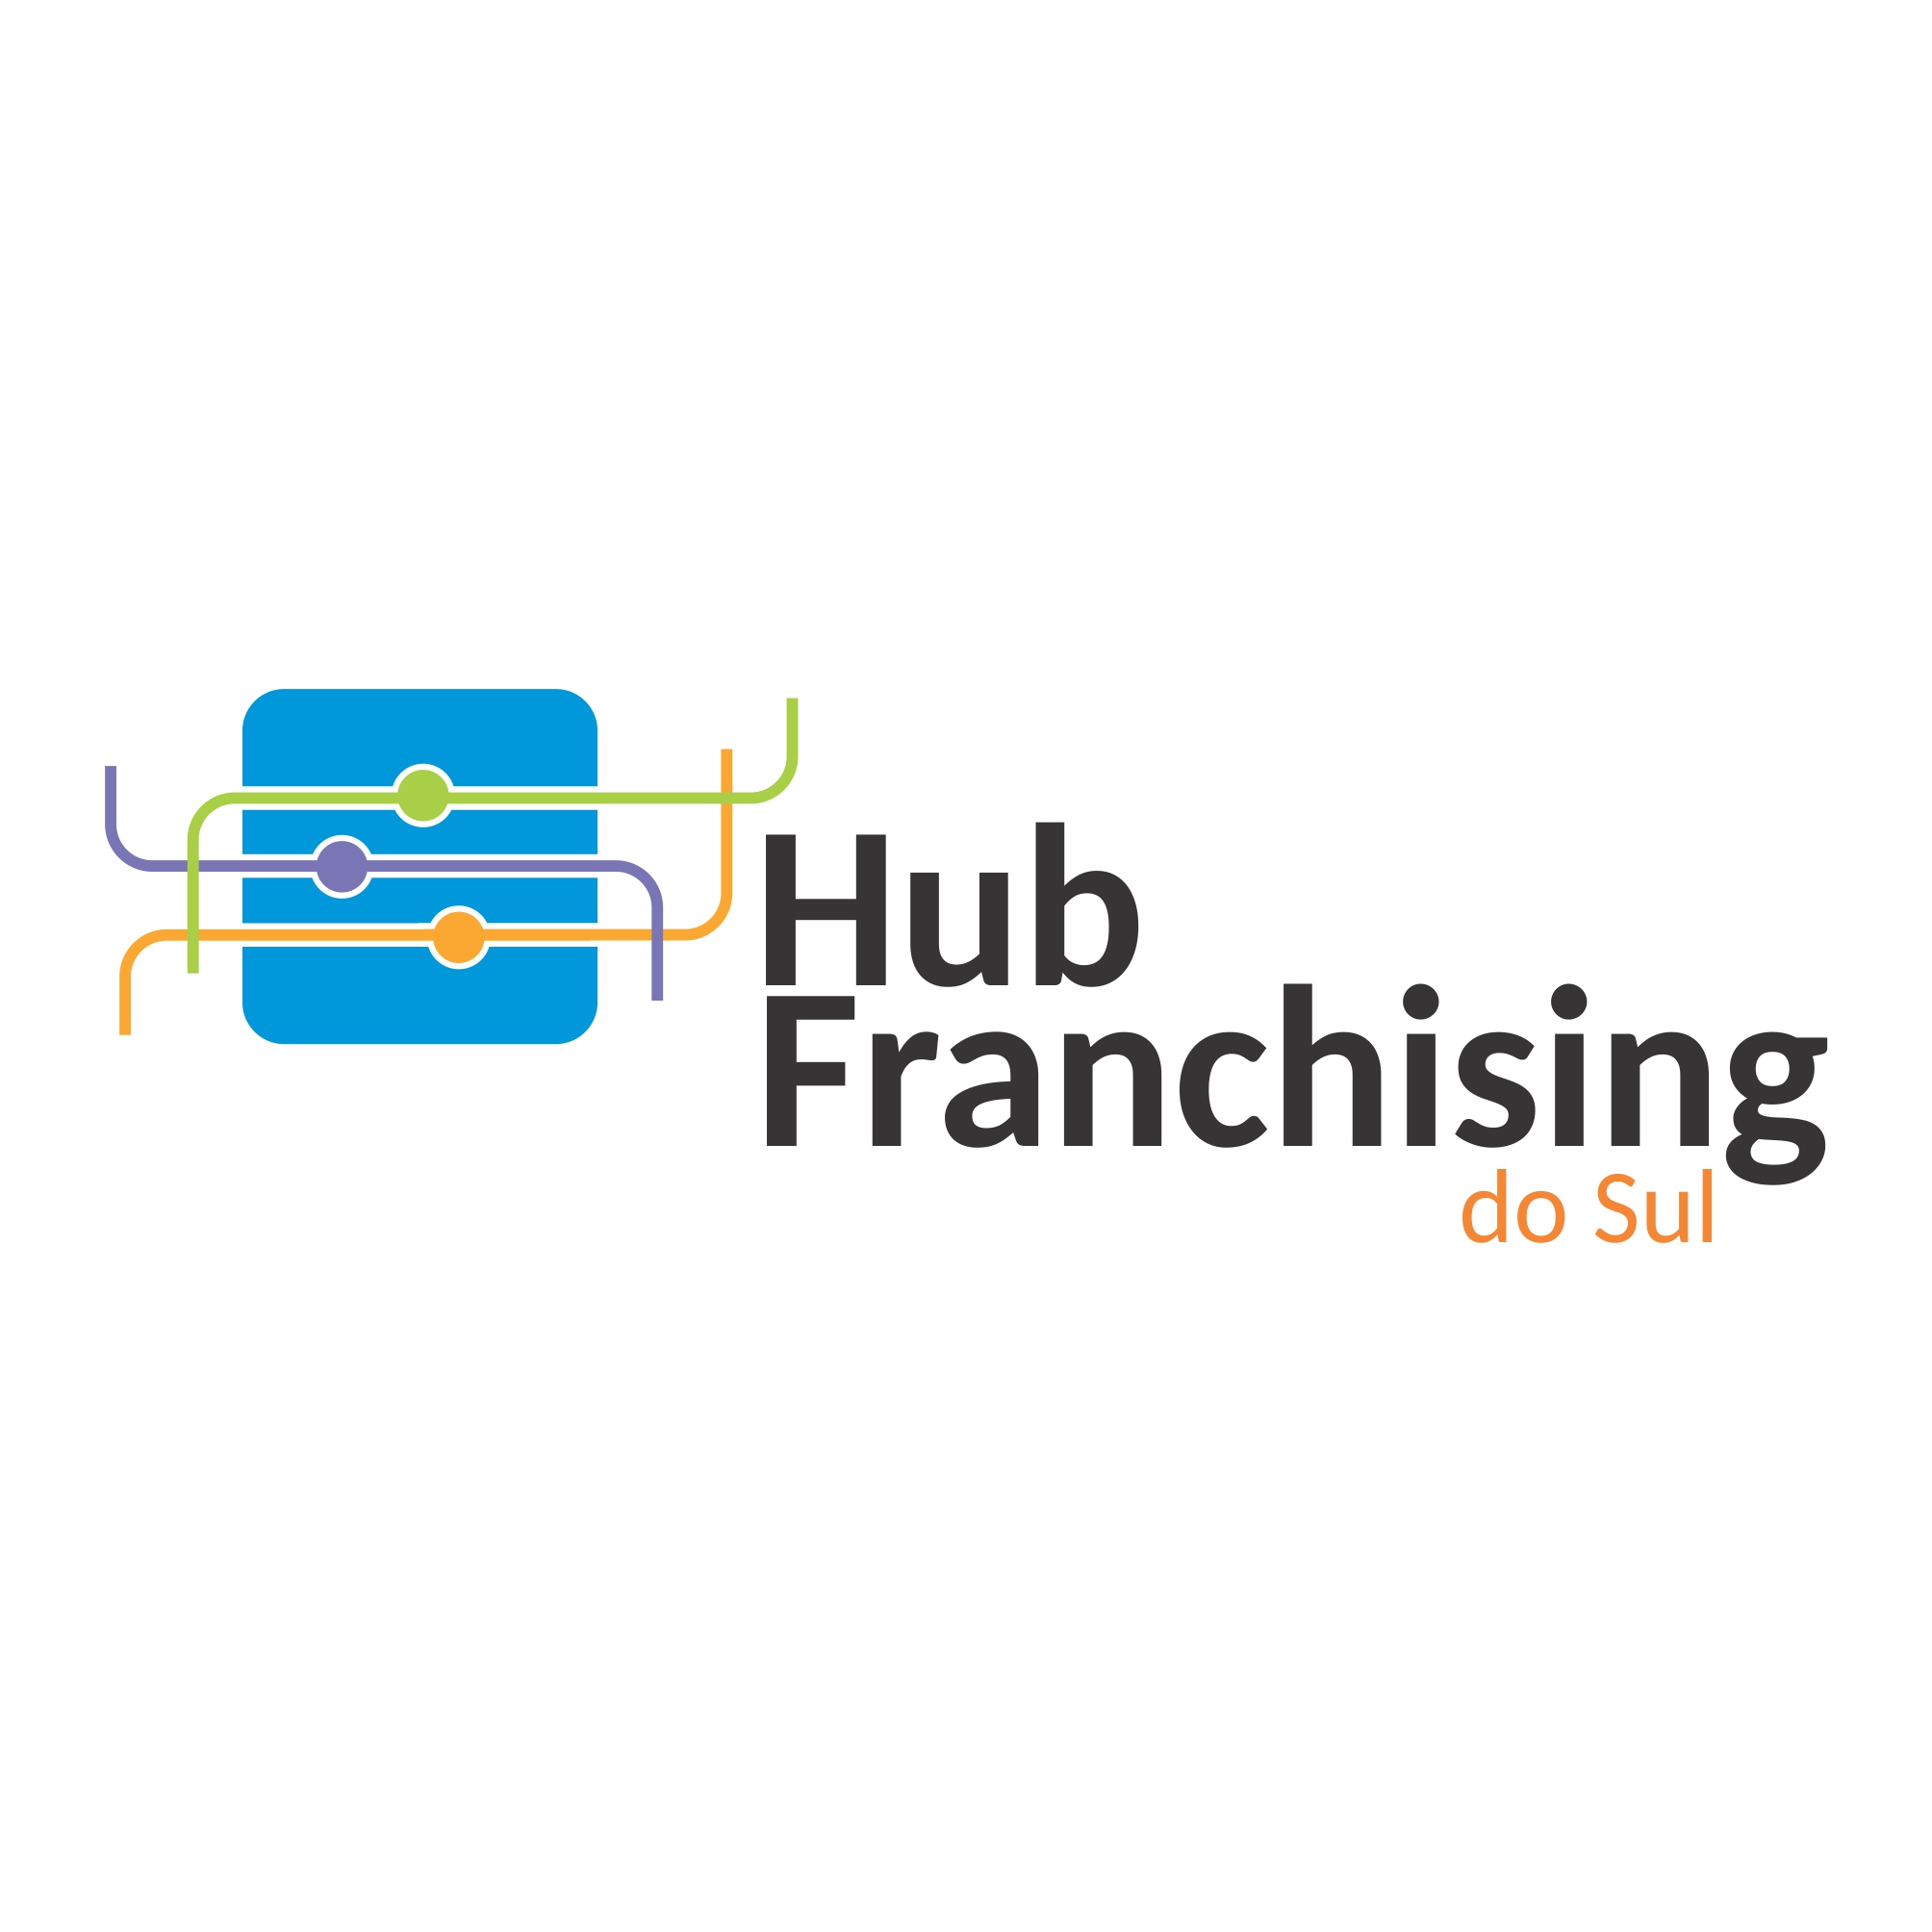 Hub Franchising